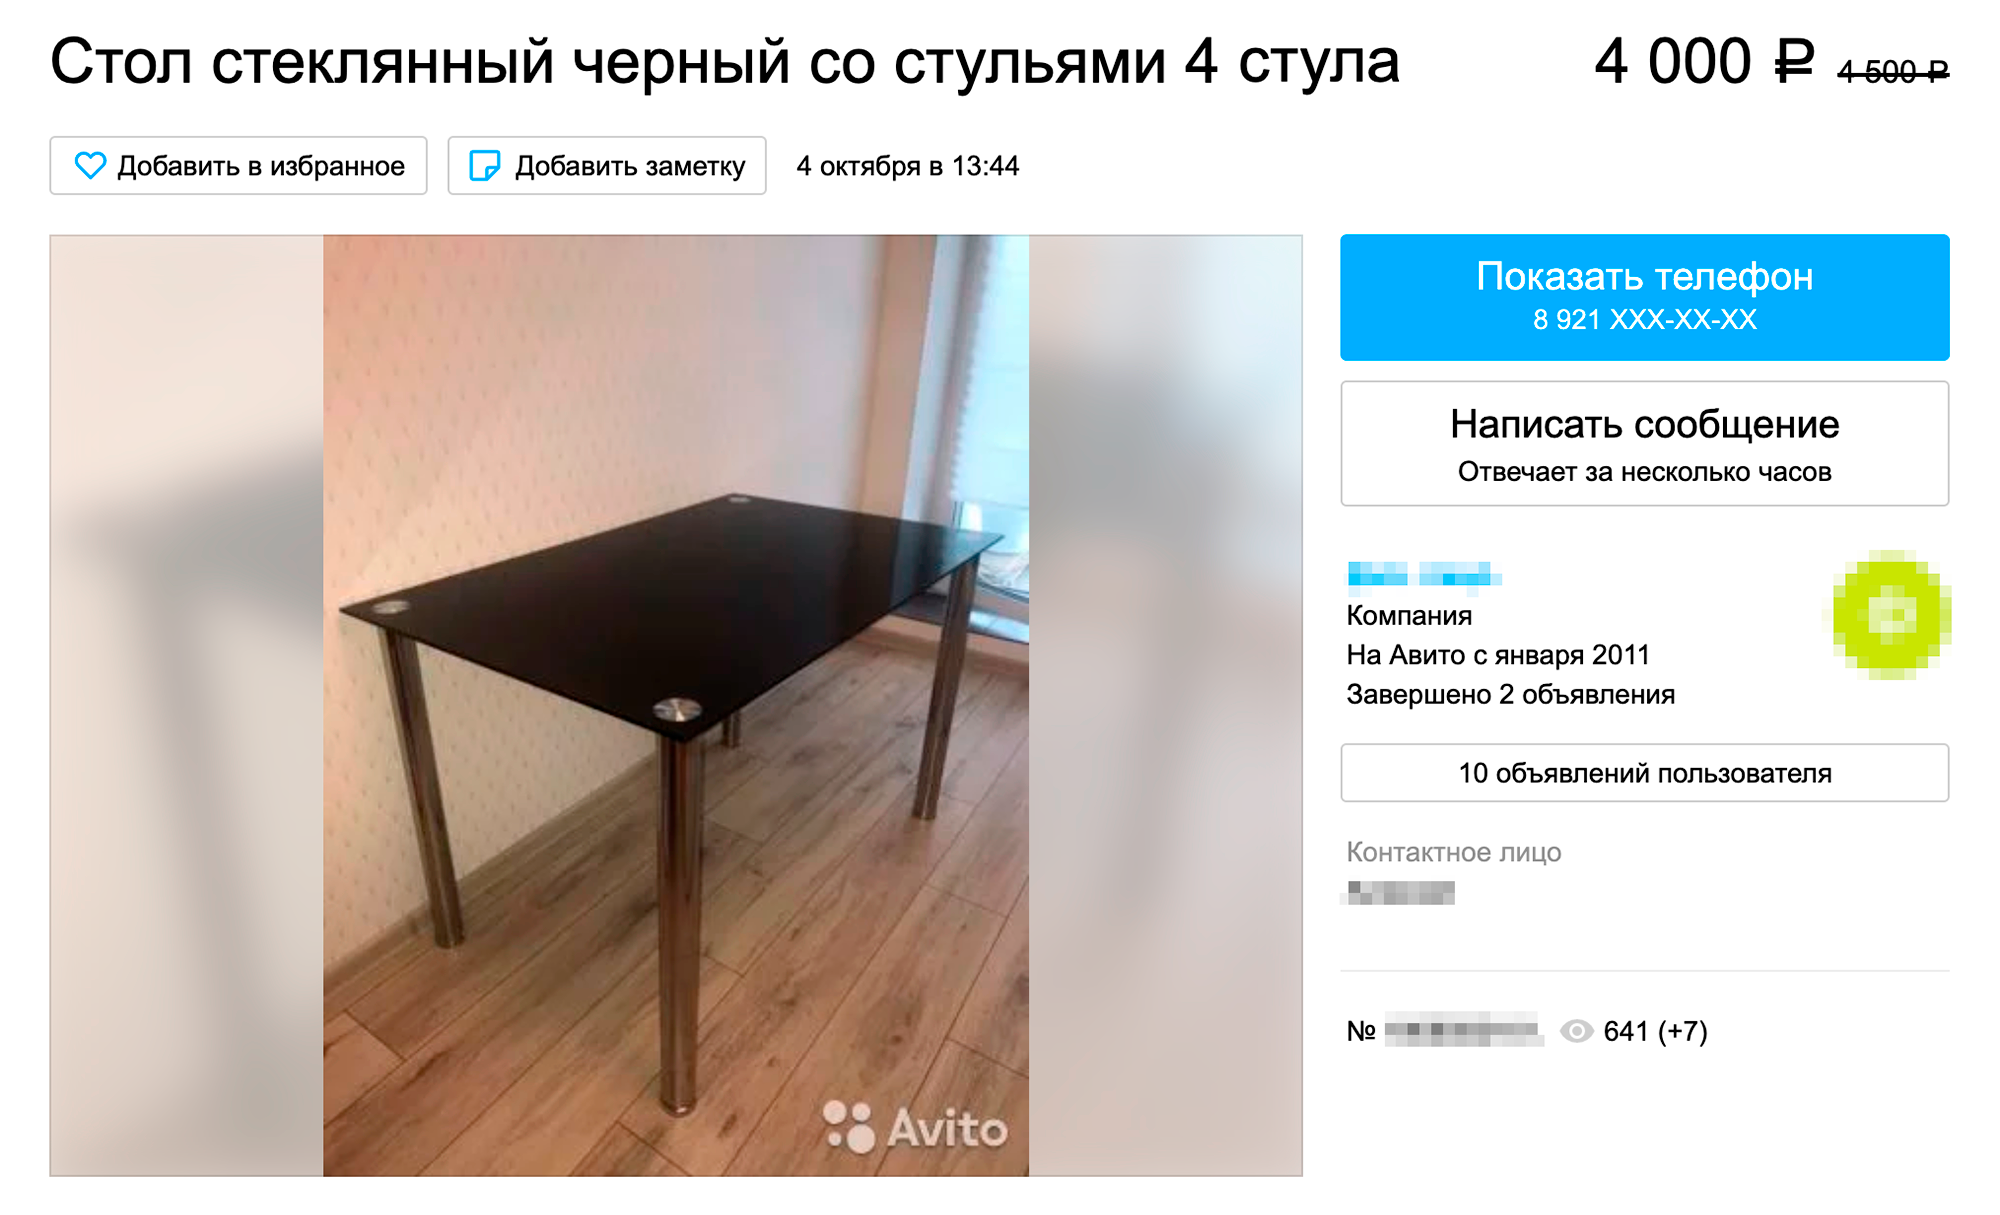 Минимальный комплект для кухни с «Авито» обойдется в 15 тысяч рублей